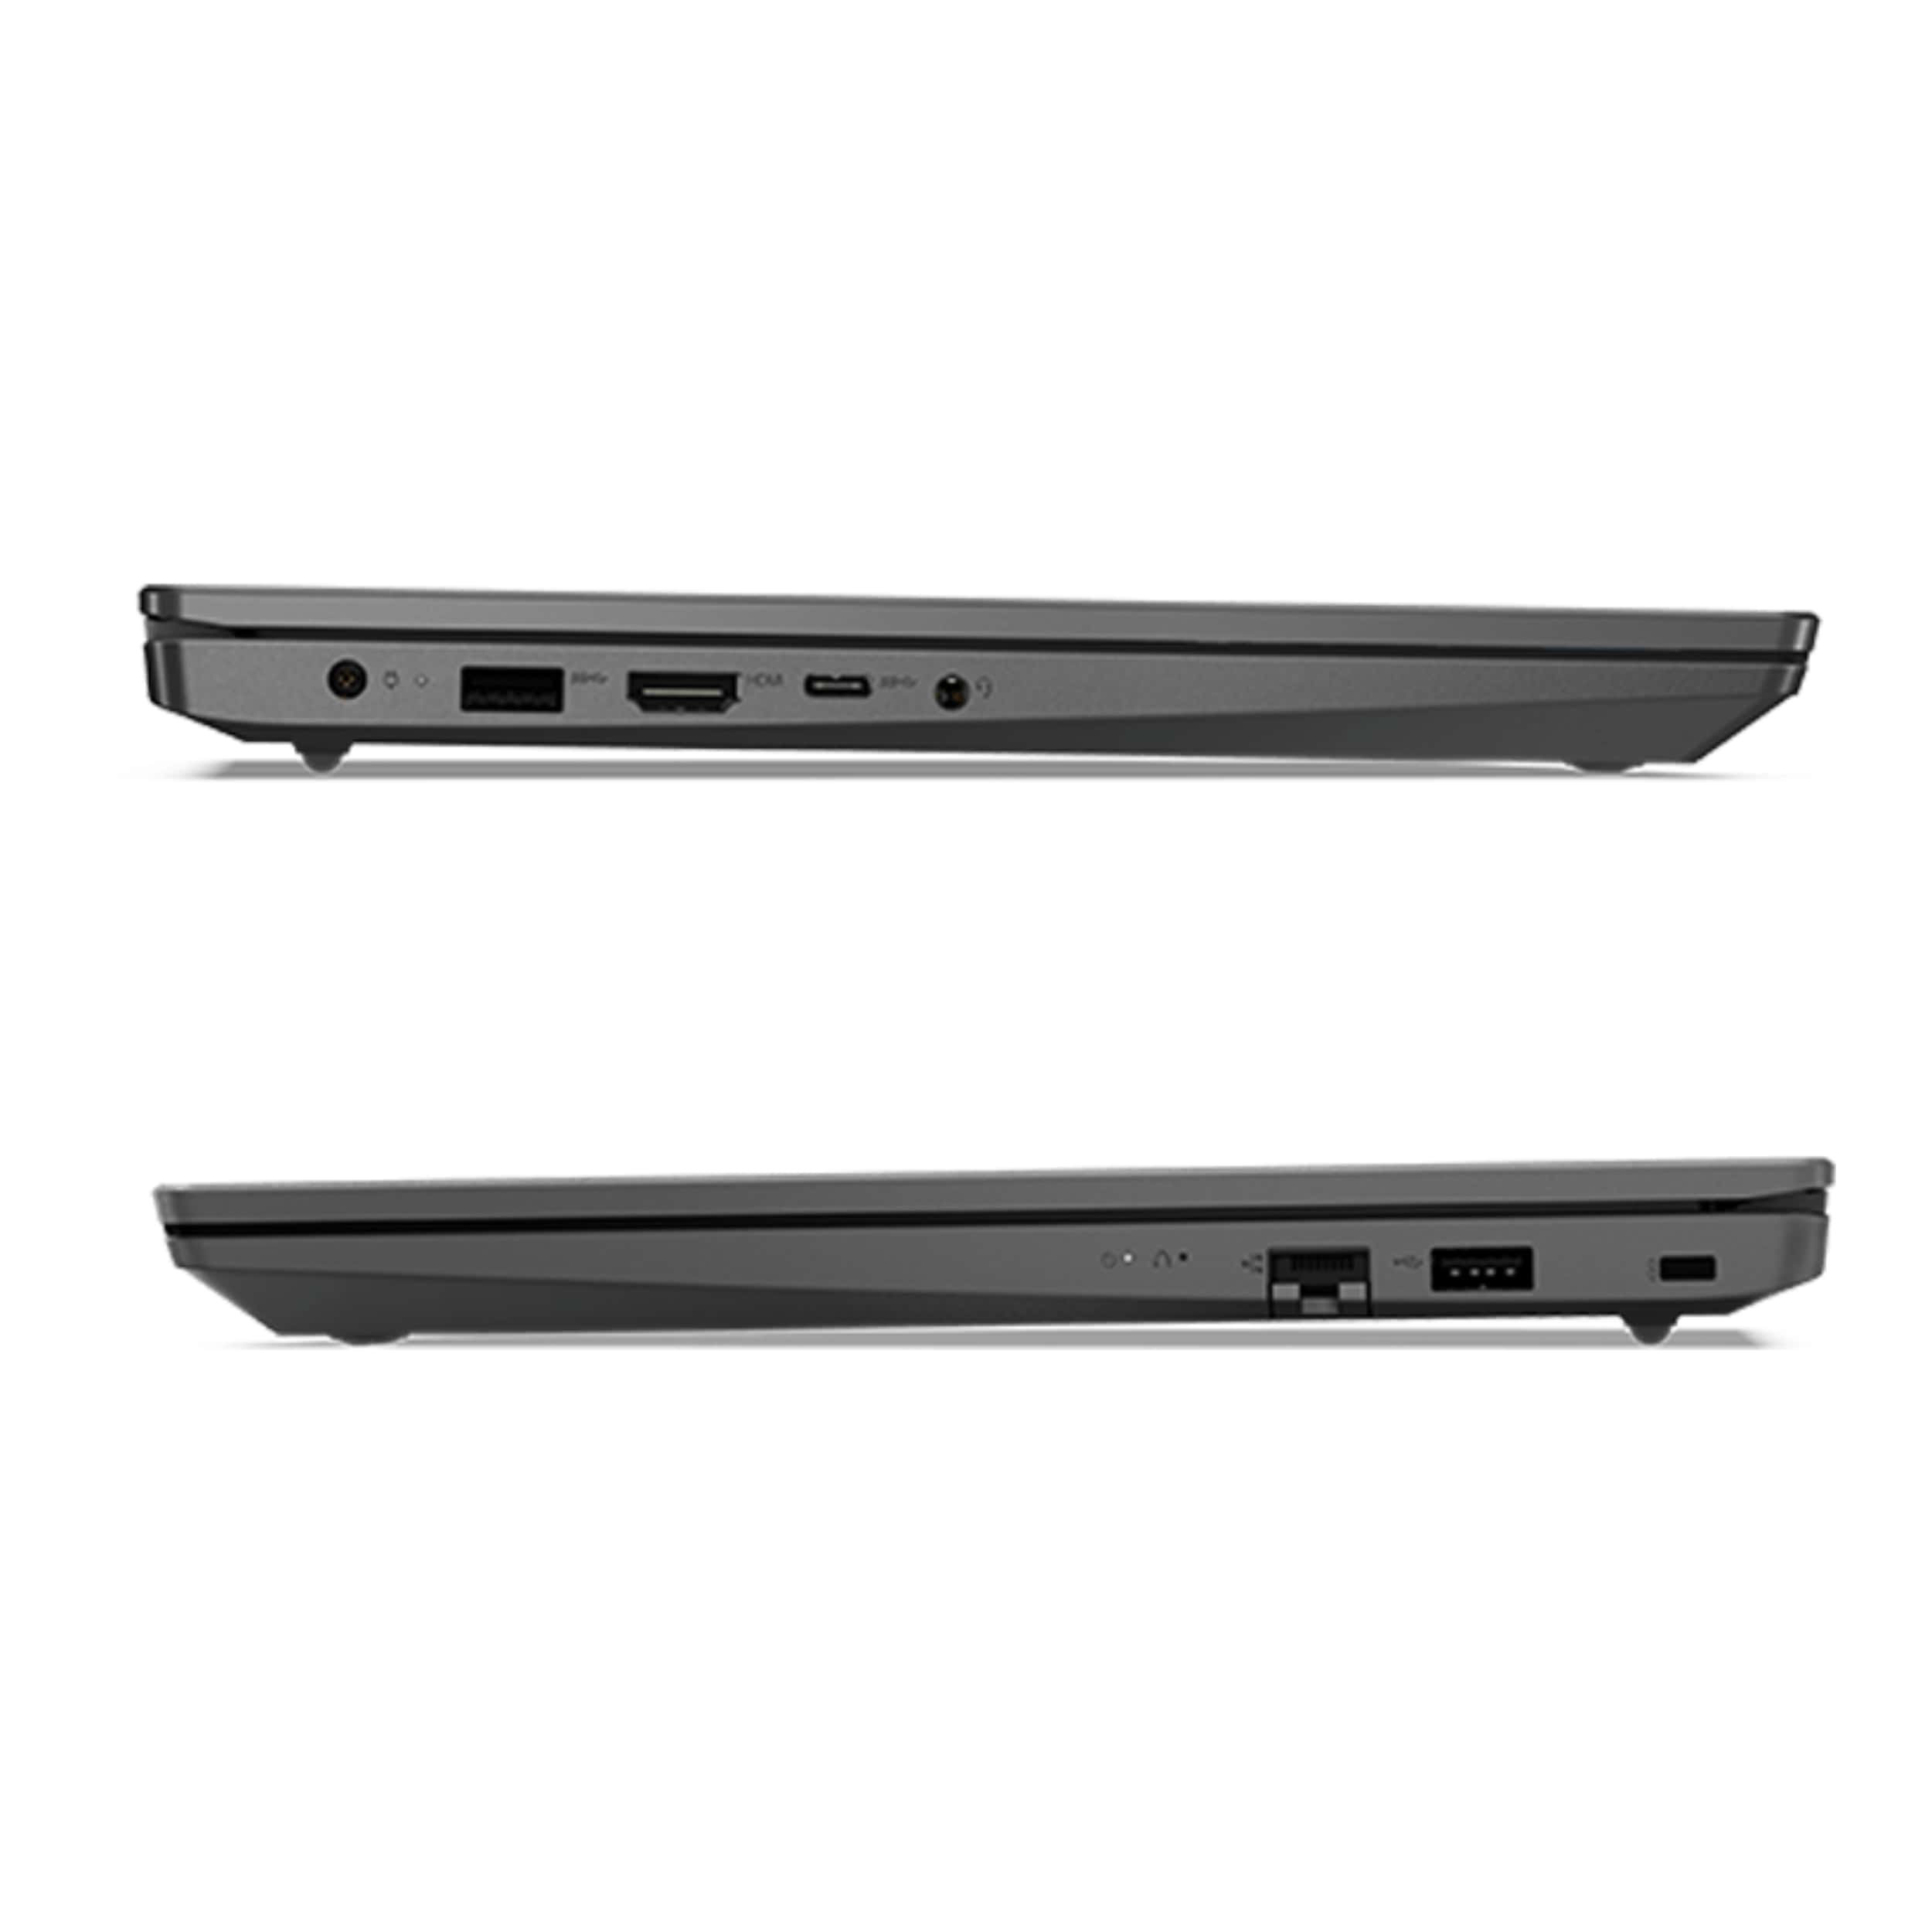 ✓ قیمت و مشخصات لپ تاپ 15.6 اینچی لنوو مدل Notebook V15 G2 ITL - زیراکو ✓